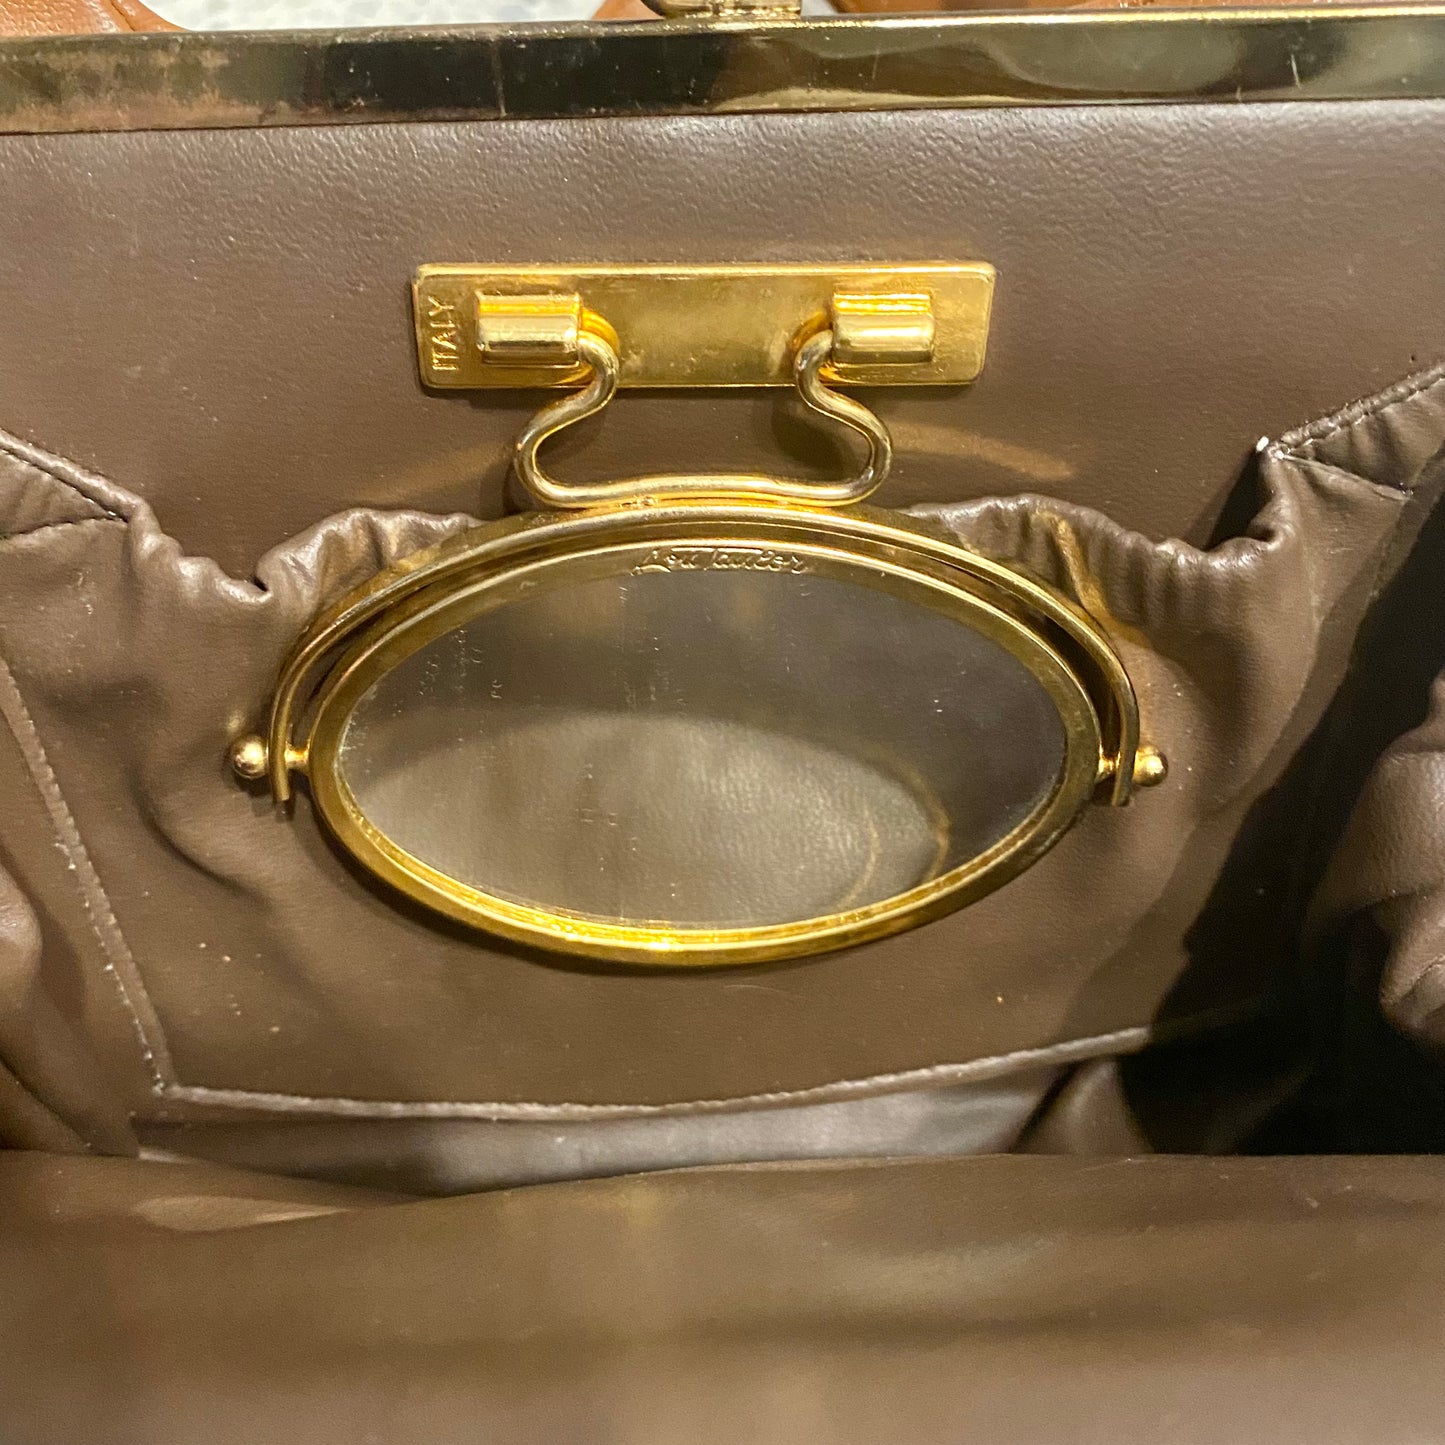 1970s Lou Taylor Leather Handbag